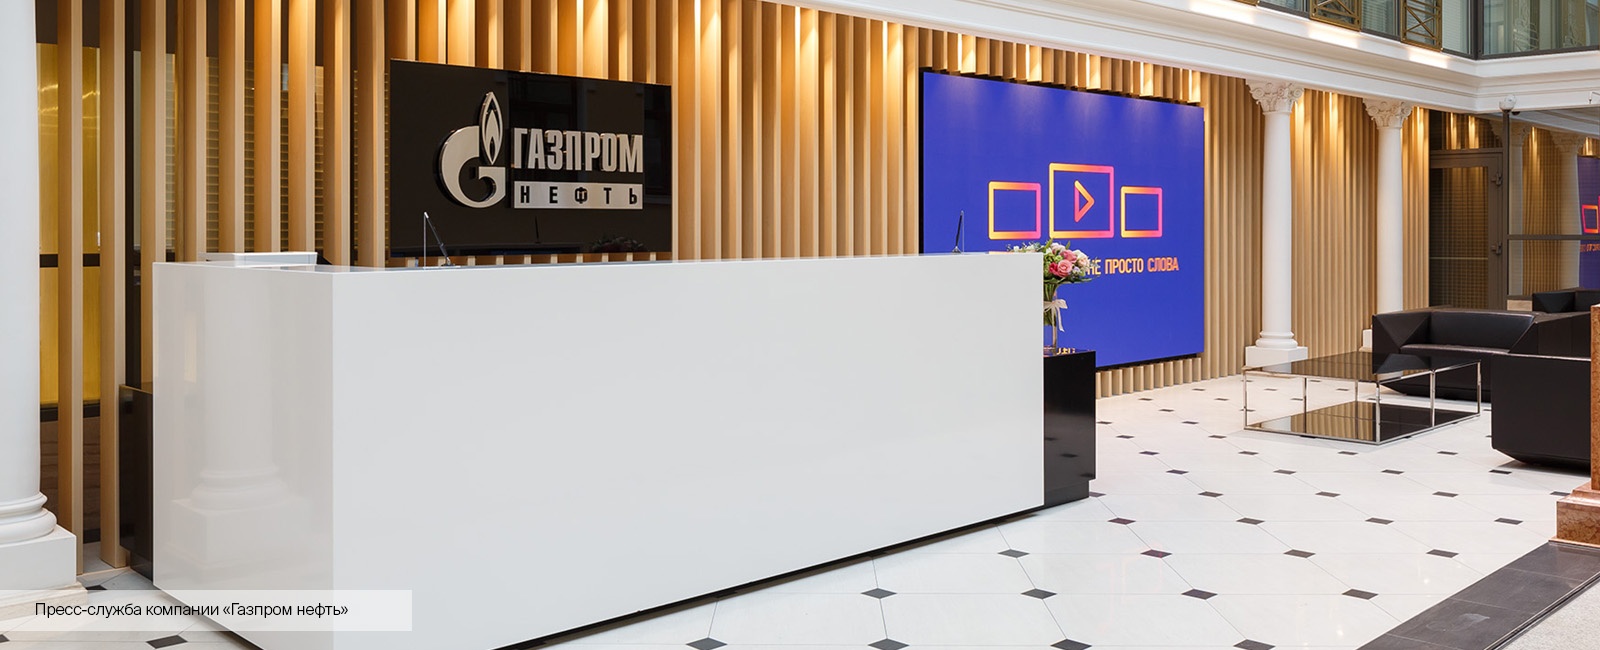 Мультимедиа-обеспечение офиса технологических подразделений «Газпром нефти» на ул. Мойка